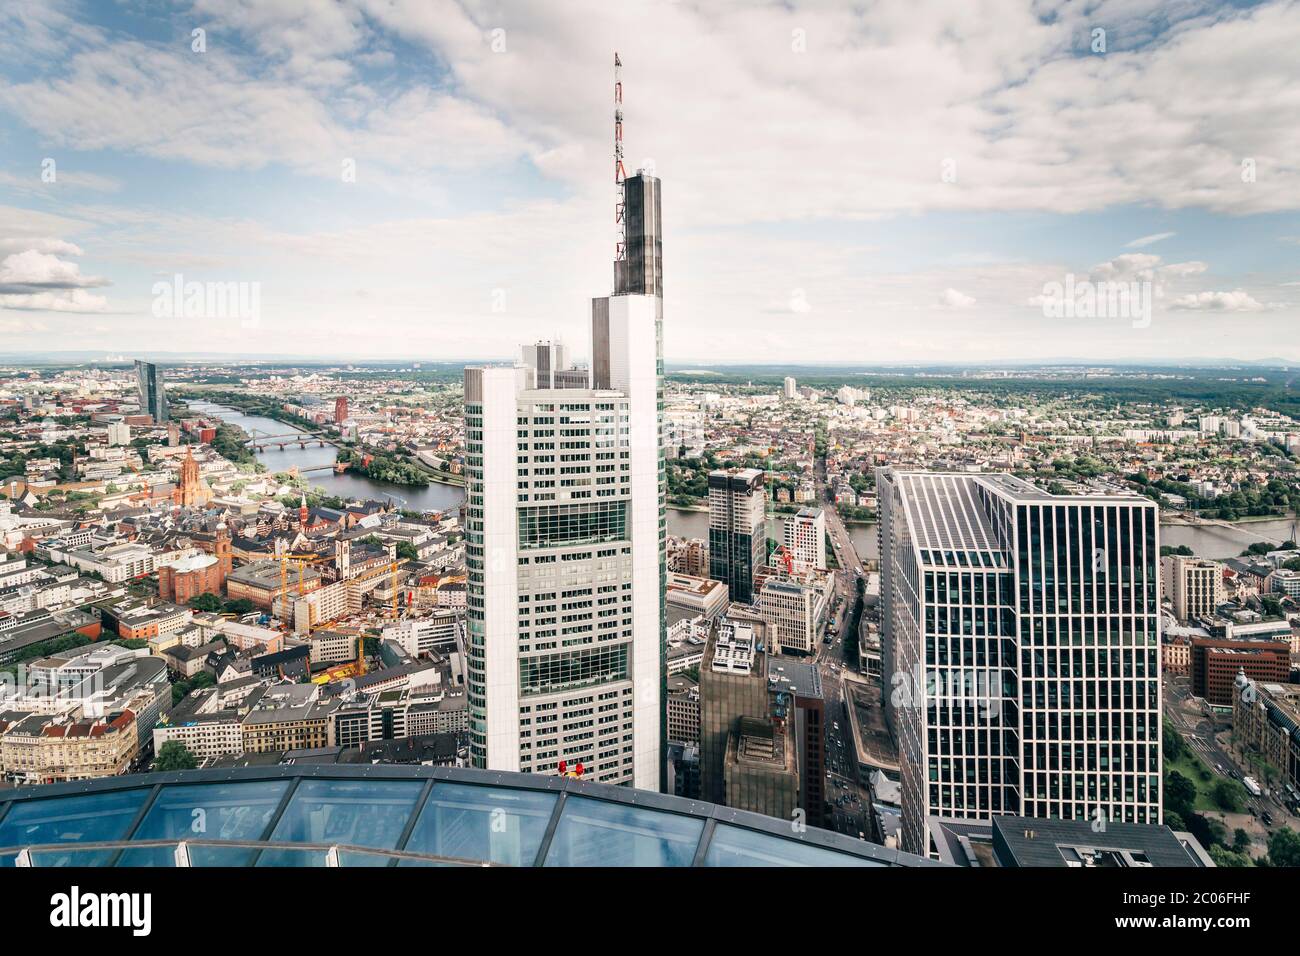 Panorama de l'antenne du centre-ville de Francfort avec des gratte-ciel et la rivière Main, vue depuis la tour principale, Frankfurt am Main, Allemagne Banque D'Images